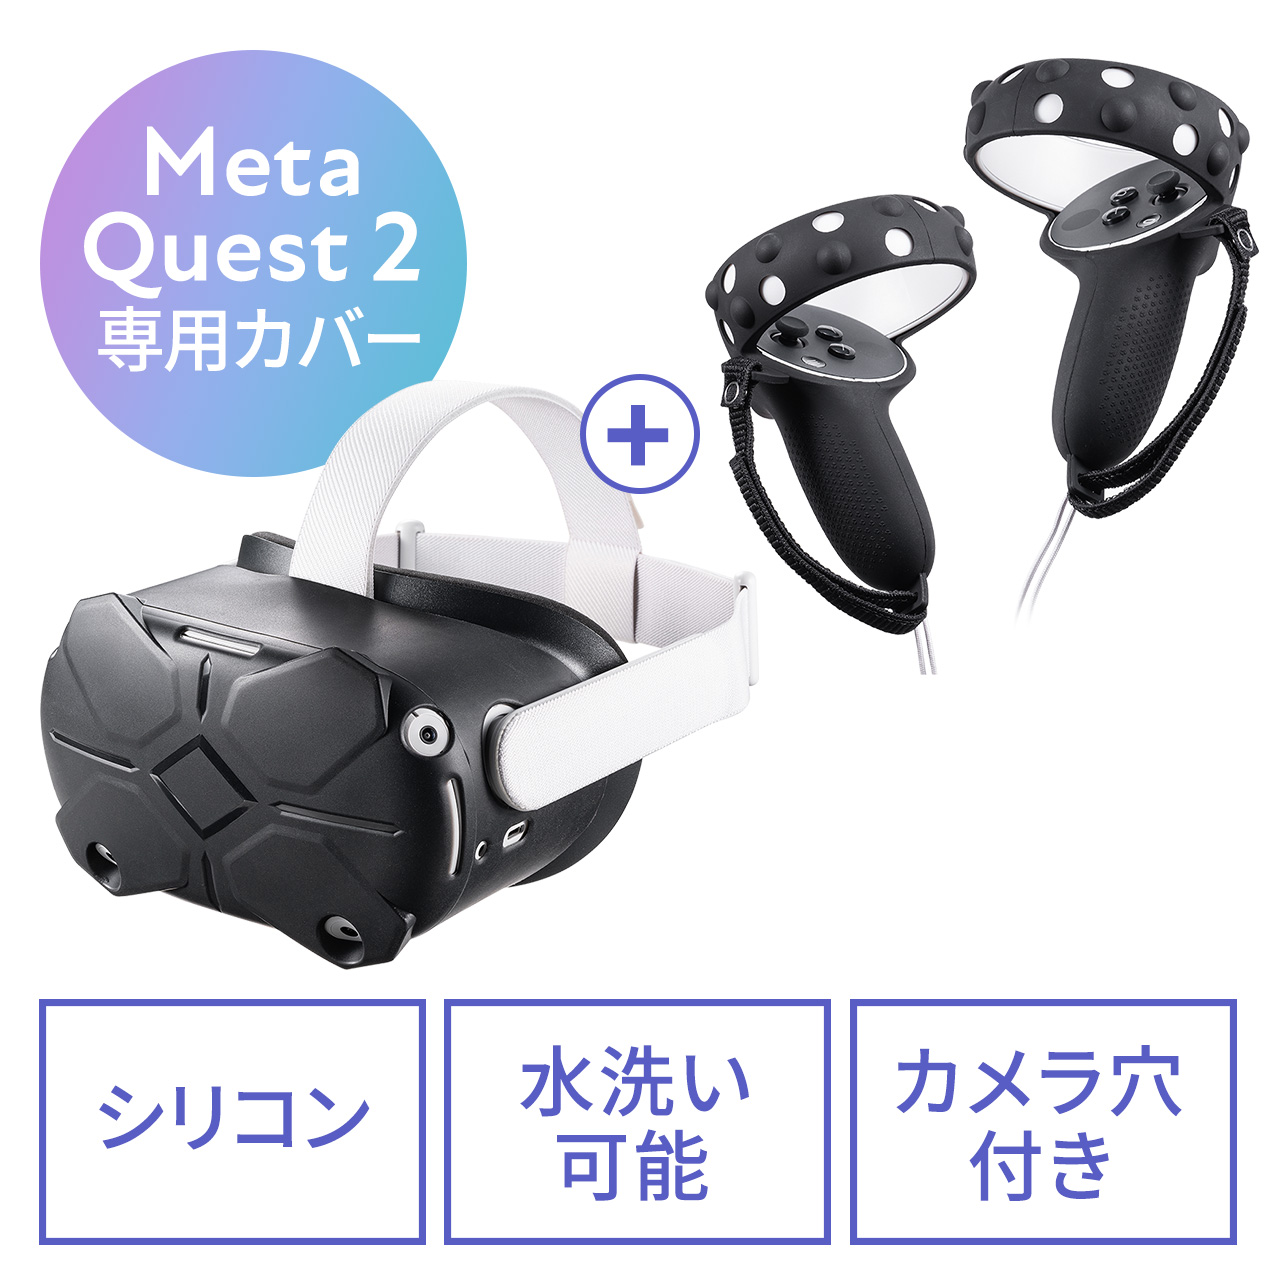 Meta Quest 2 シェルカバー・コントローラーカバーセット シリコン